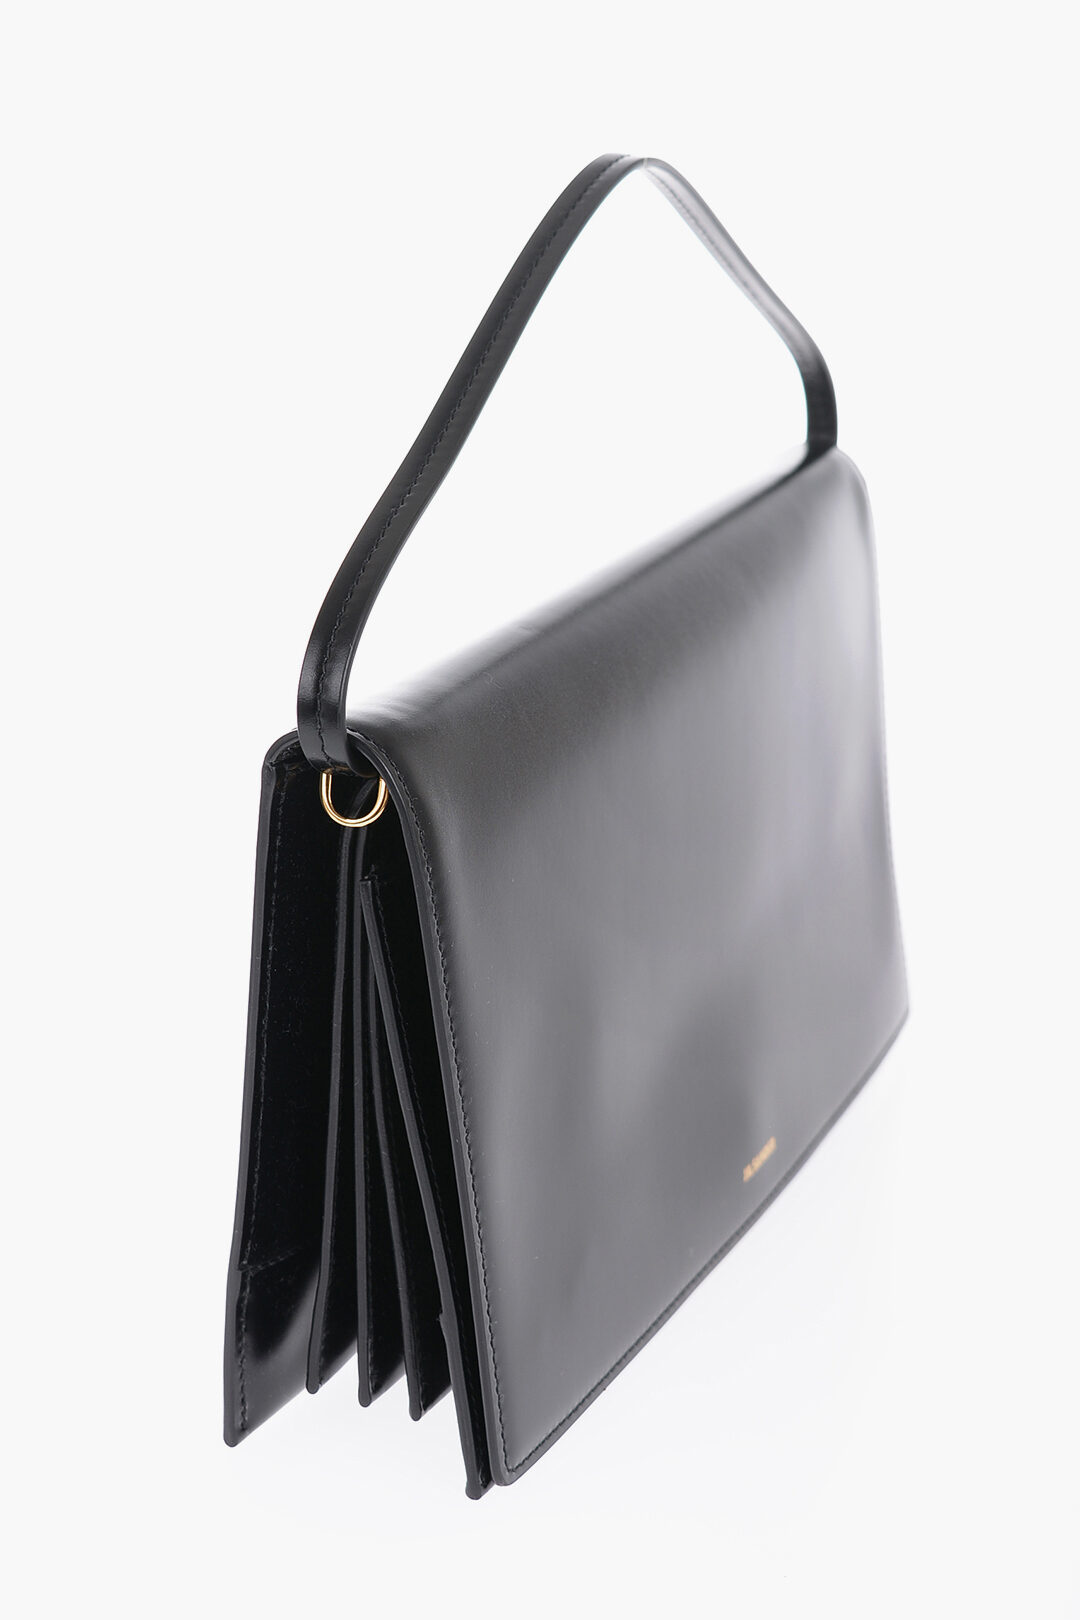 JIL SANDER Leather Shoulder Bag | Holt Renfrew